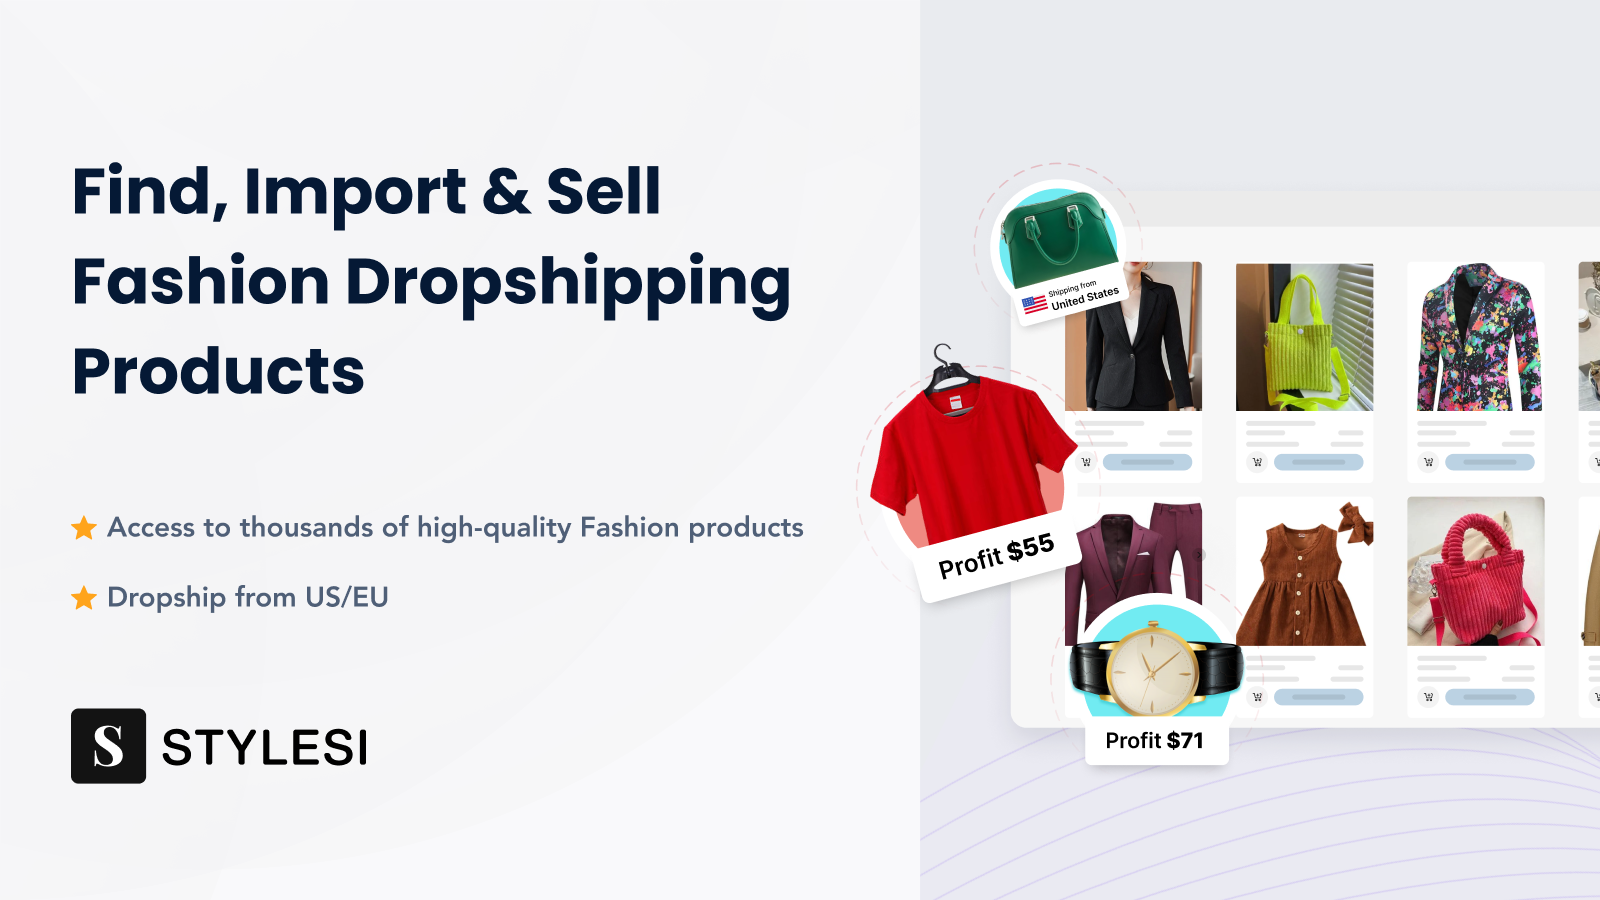 Hitta, importera och sälj modeprodukter för dropshipping